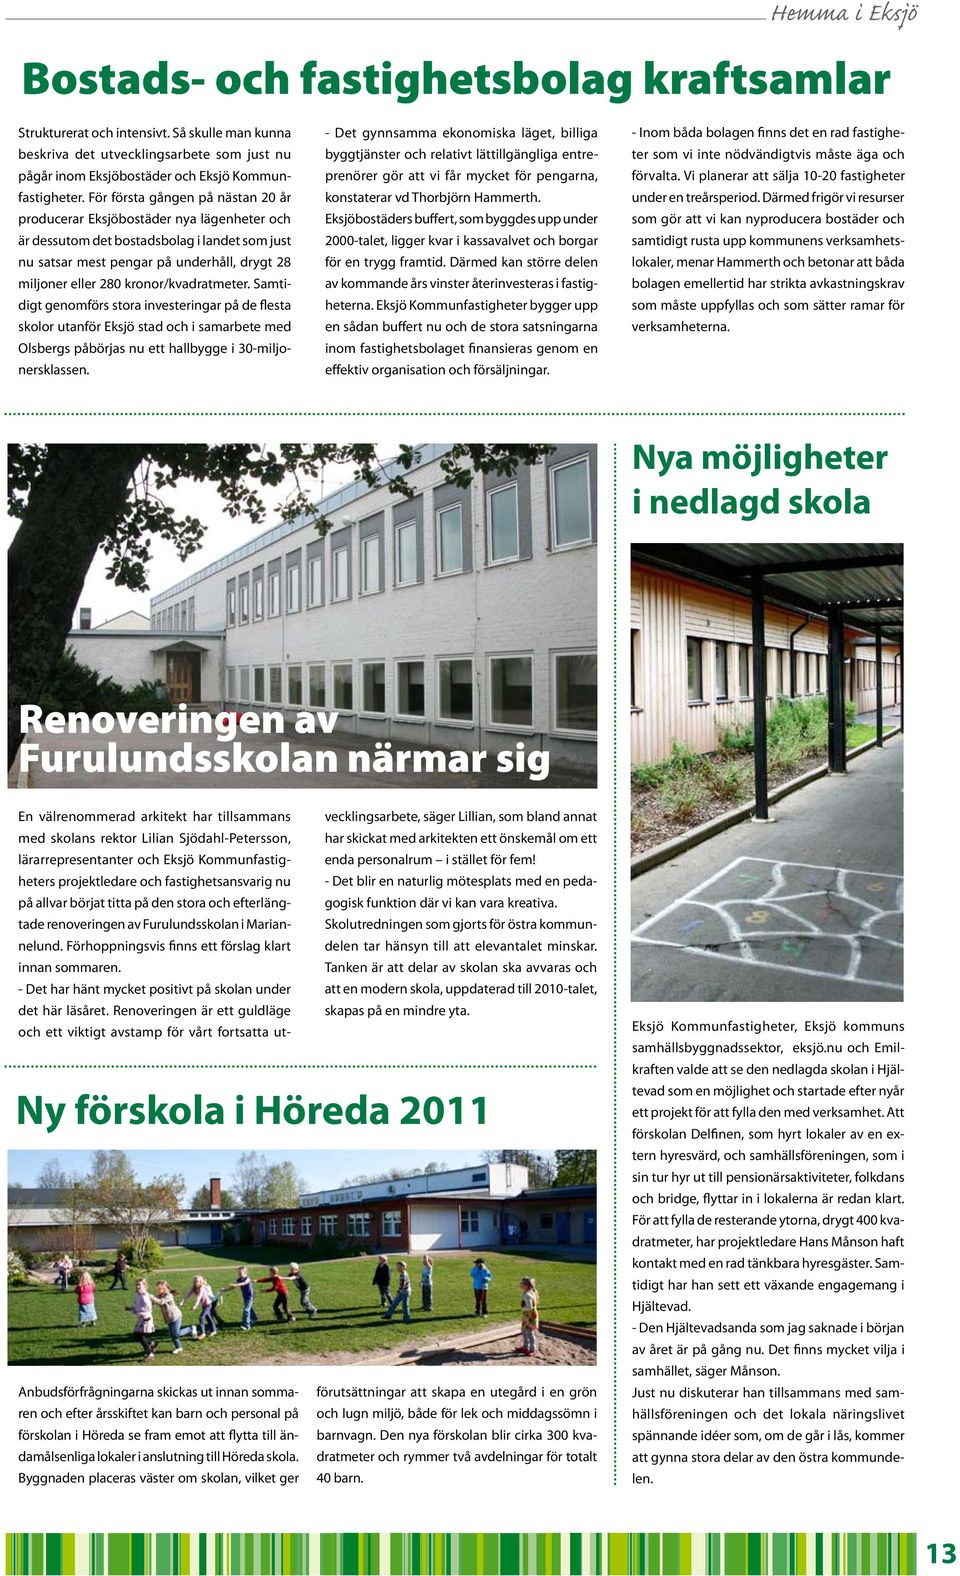 kronor/kvadratmeter. Samtidigt genomförs stora investeringar på de flesta skolor utanför Eksjö stad och i samarbete med Olsbergs påbörjas nu ett hallbygge i 30-miljonersklassen.